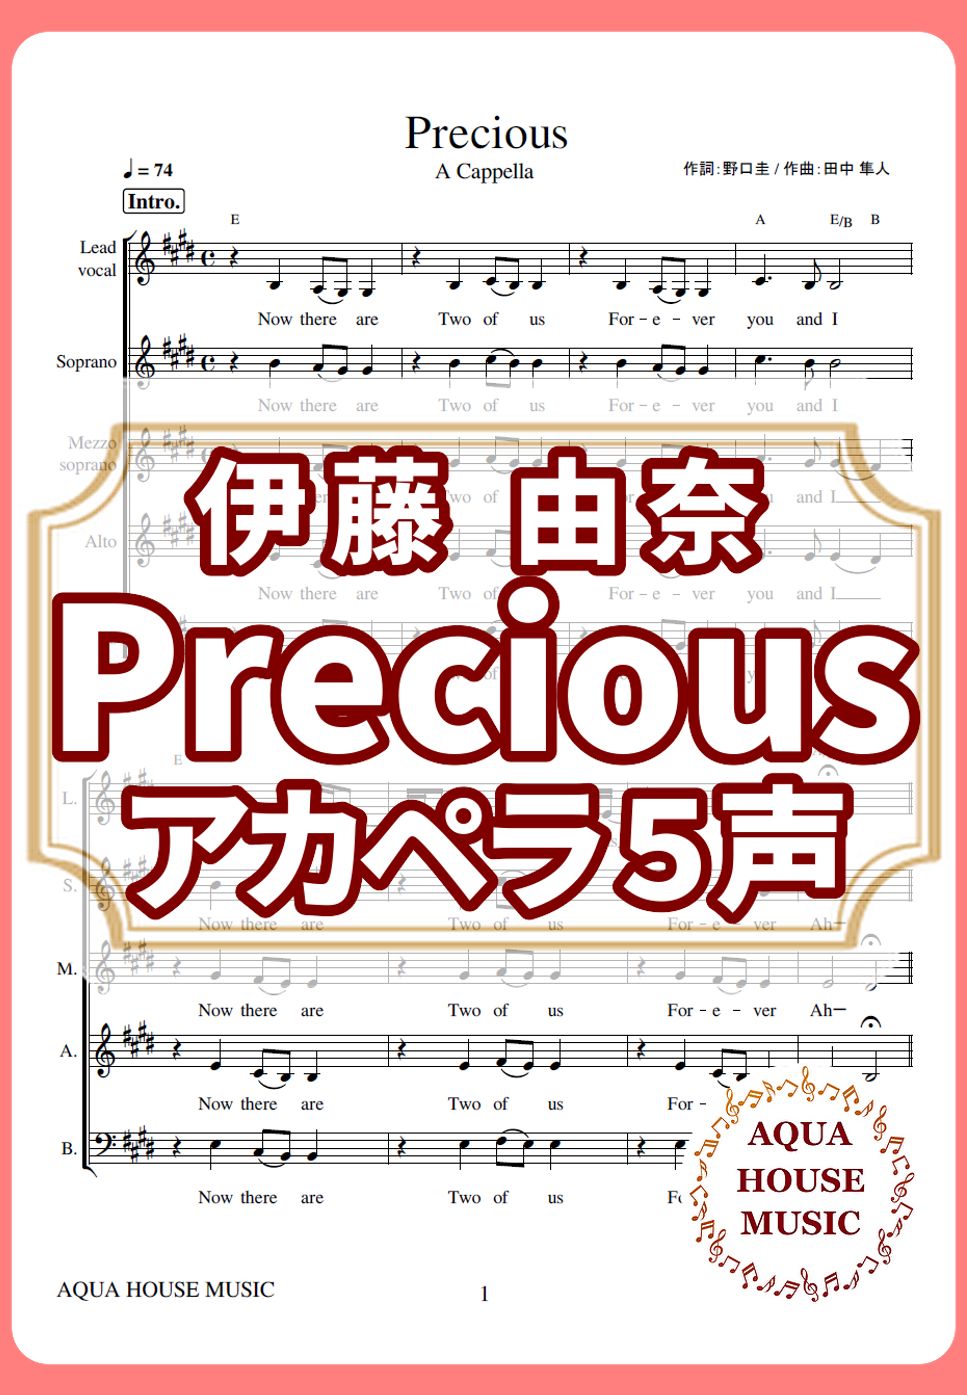 伊藤 由奈 - PRECIOUS (アカペラ楽譜♪５声ボイパなし) by 飯田 亜紗子